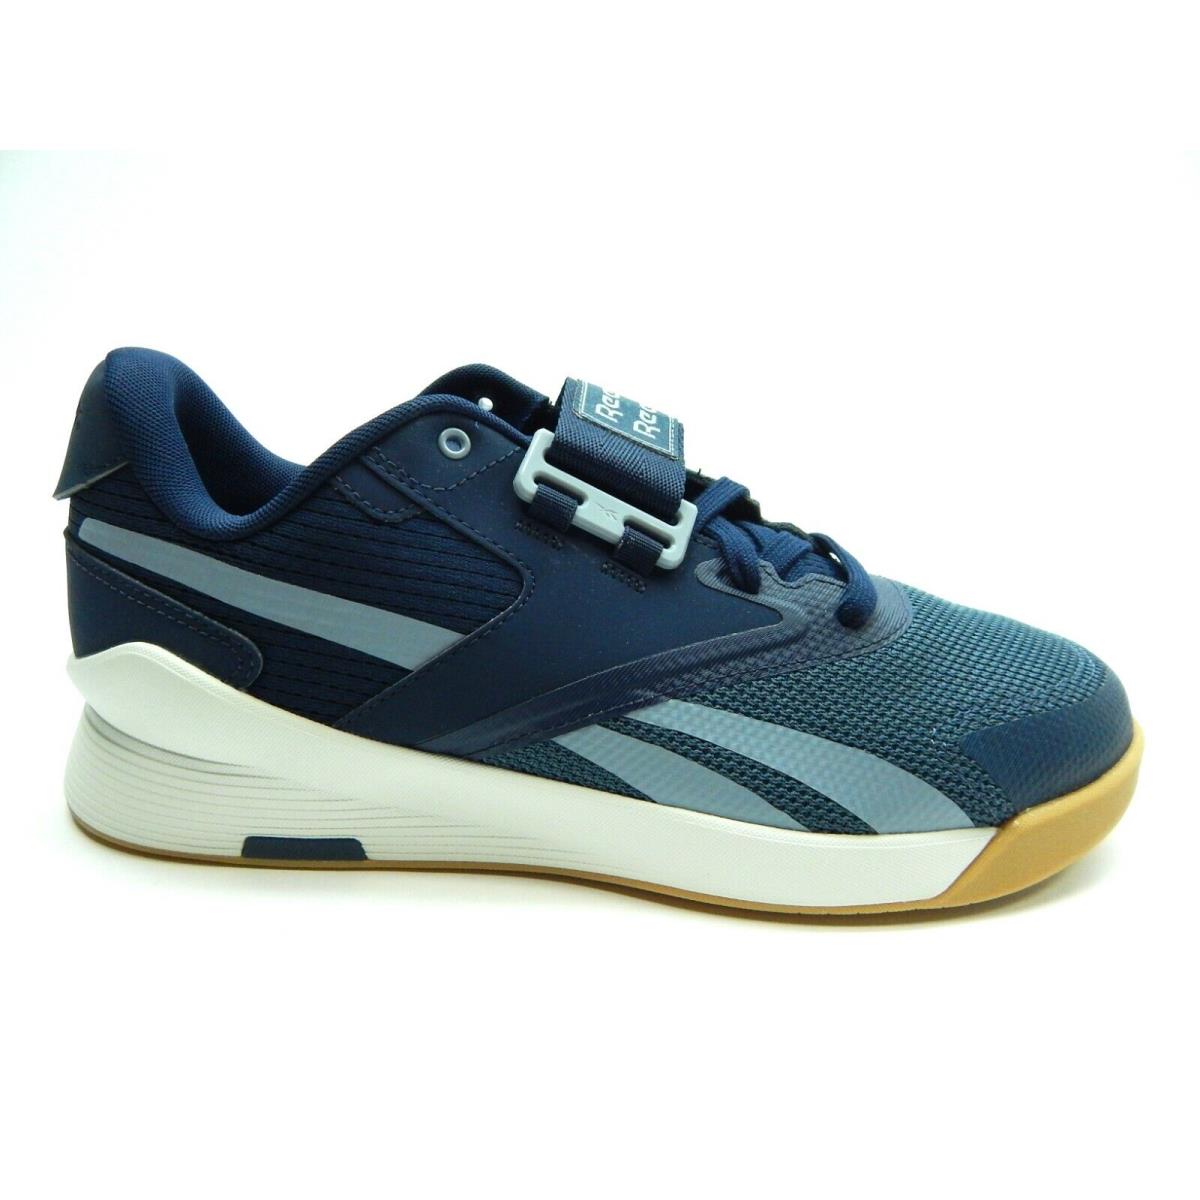 Reebok Lifter PR II Training FU9442 Blue Navy Men Shoes Size 9.5